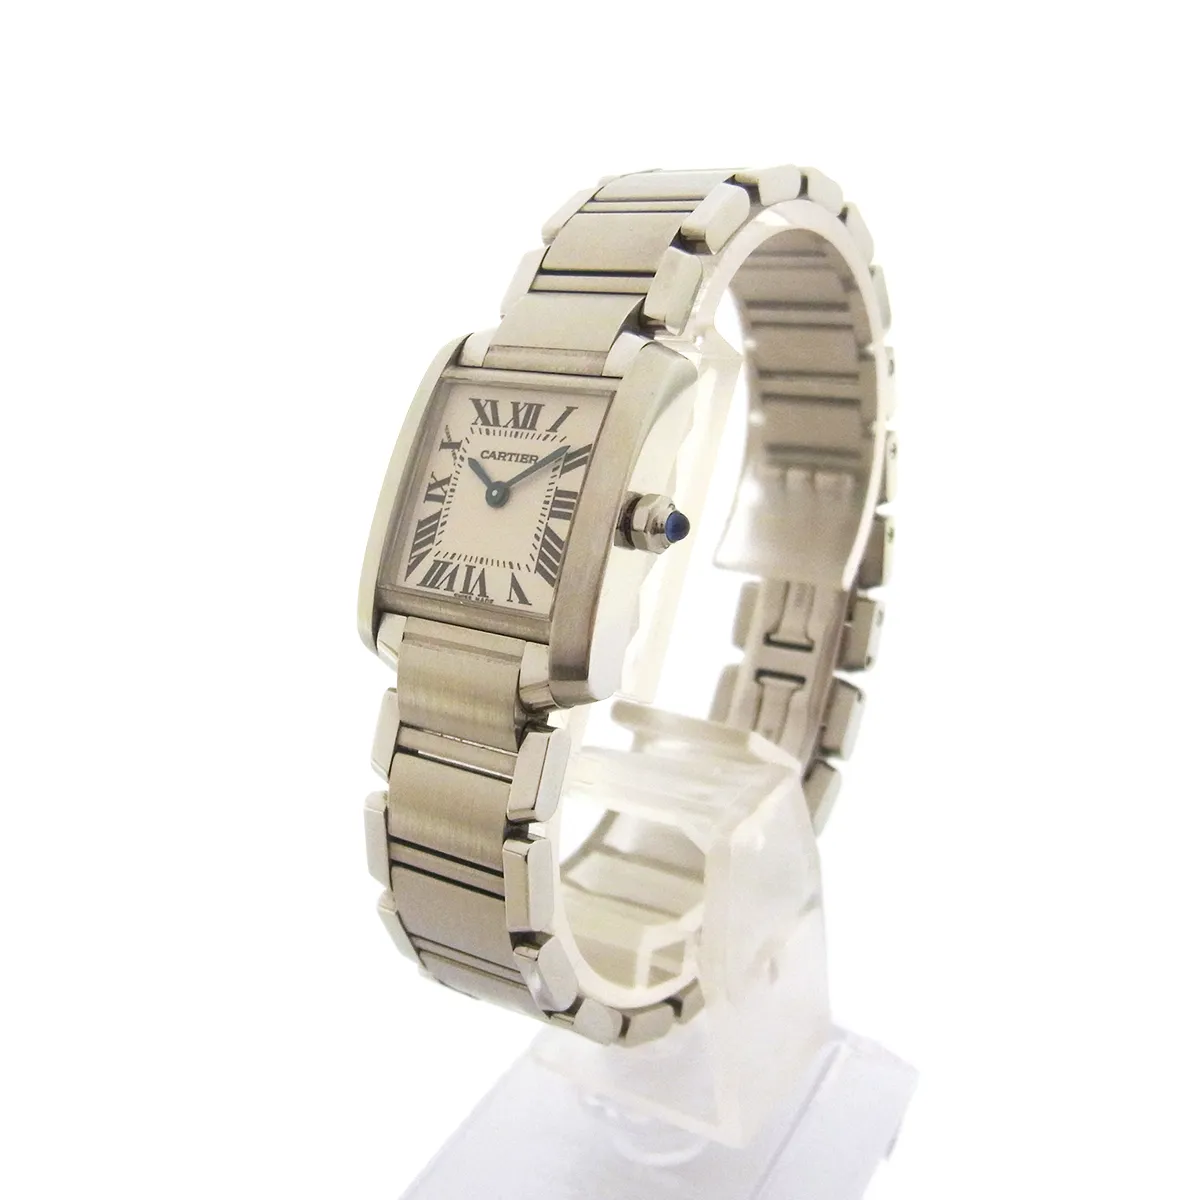 カルティエ (Cartier) タンクフランセーズSM W51008Q3 腕時計 白文字盤